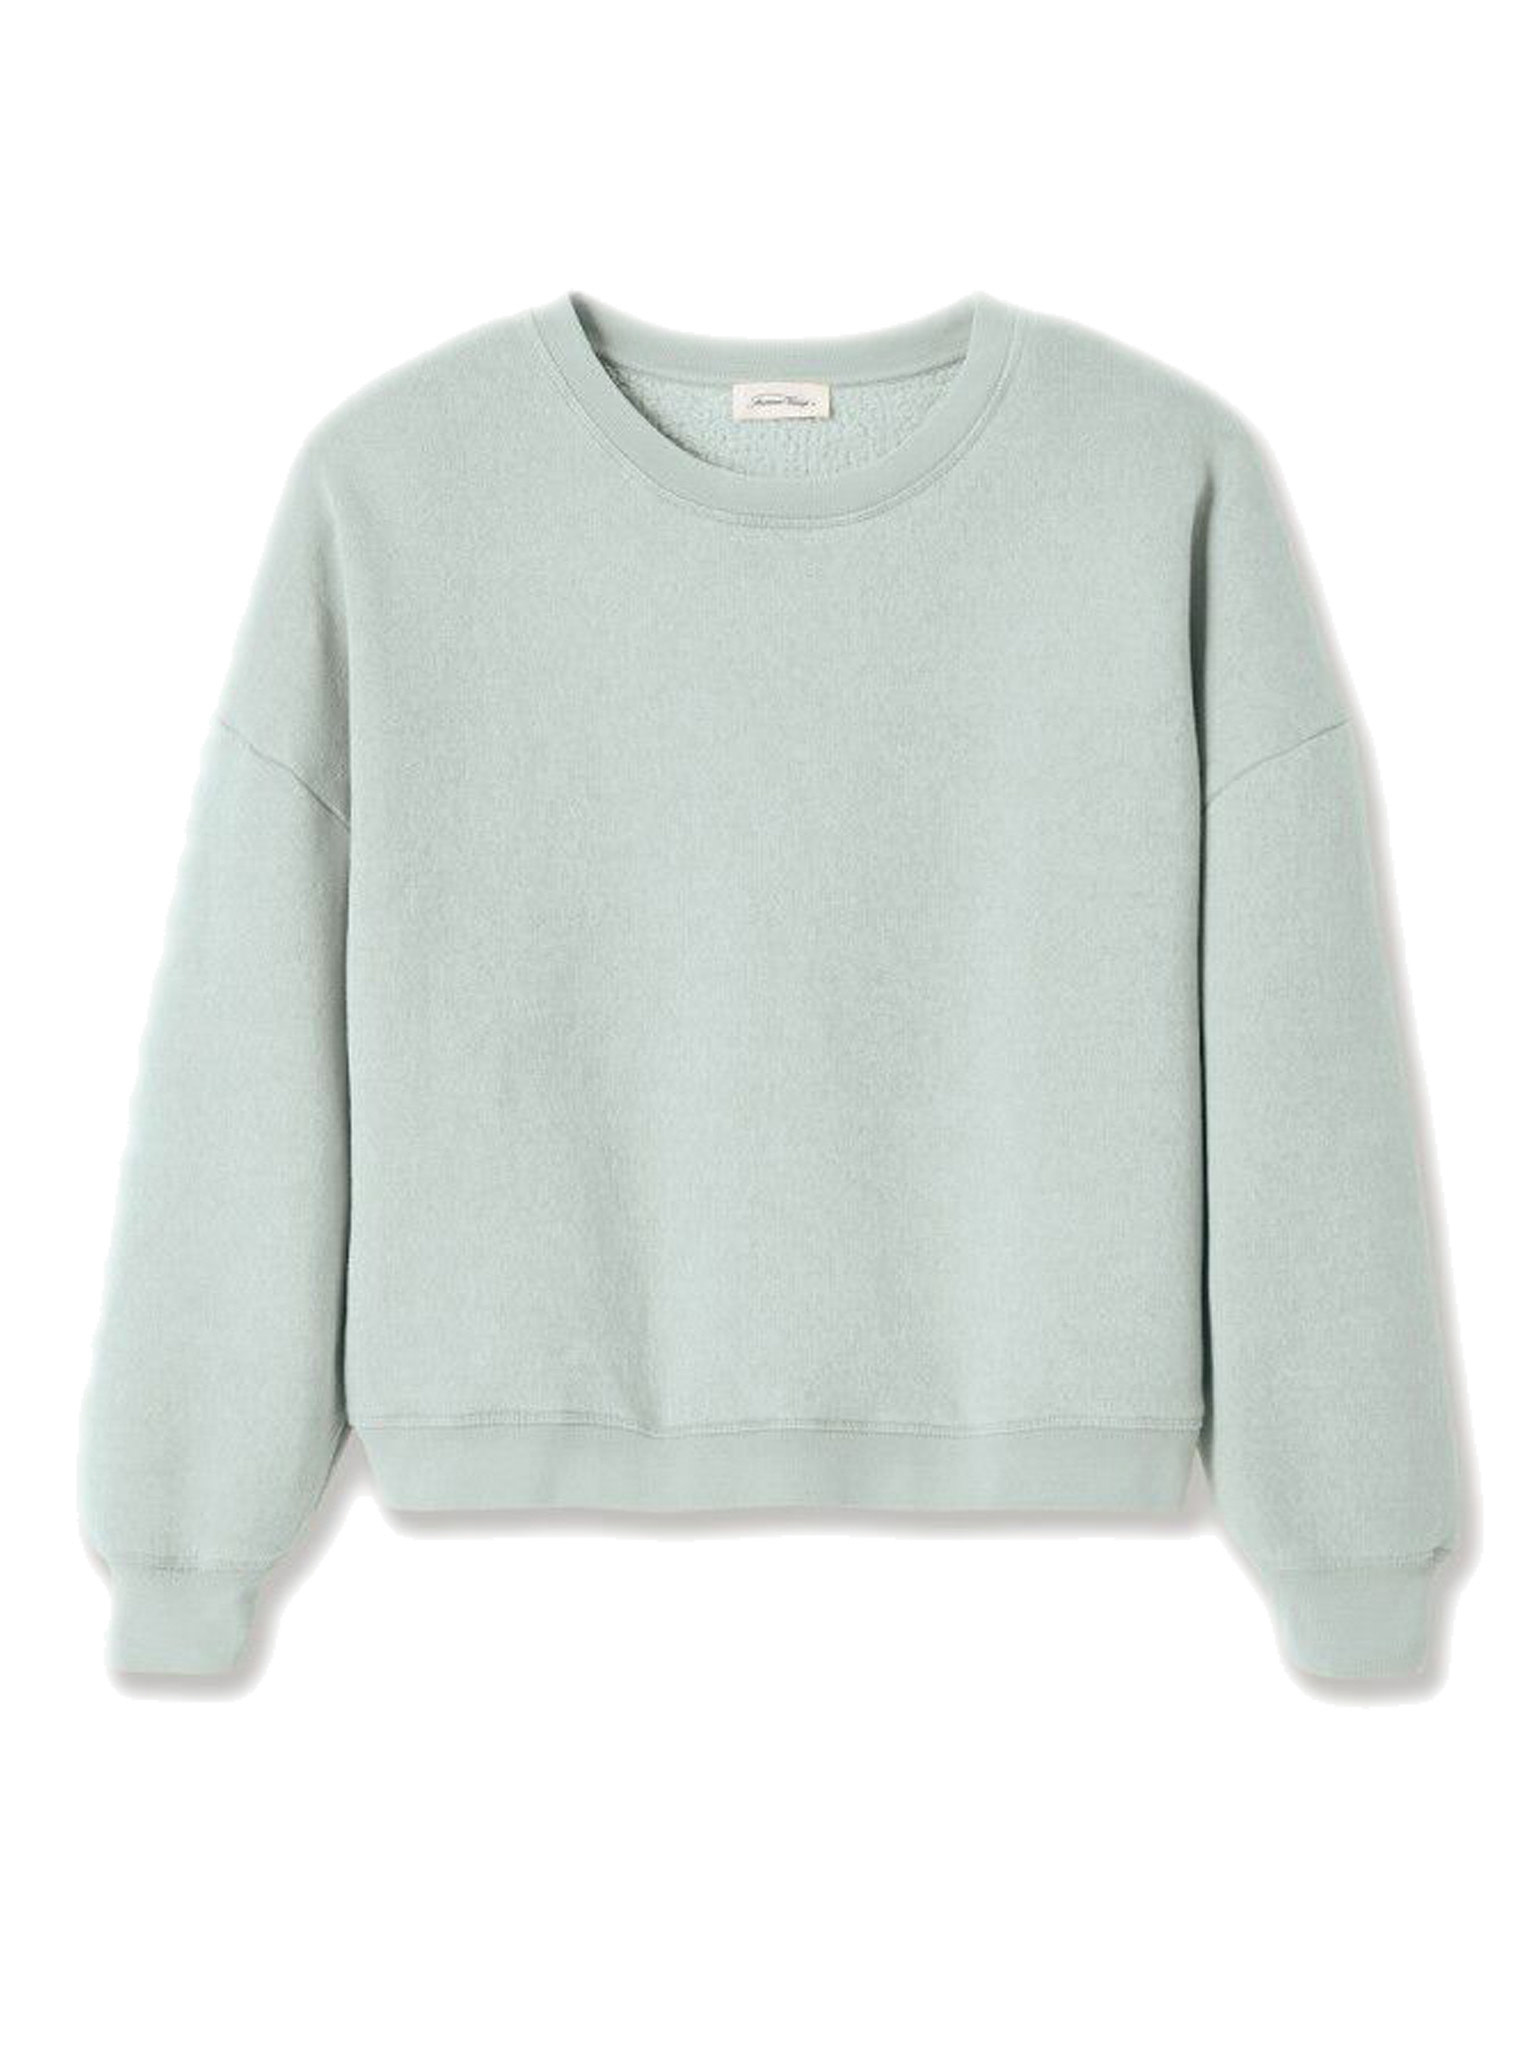 Sweater Ikatown